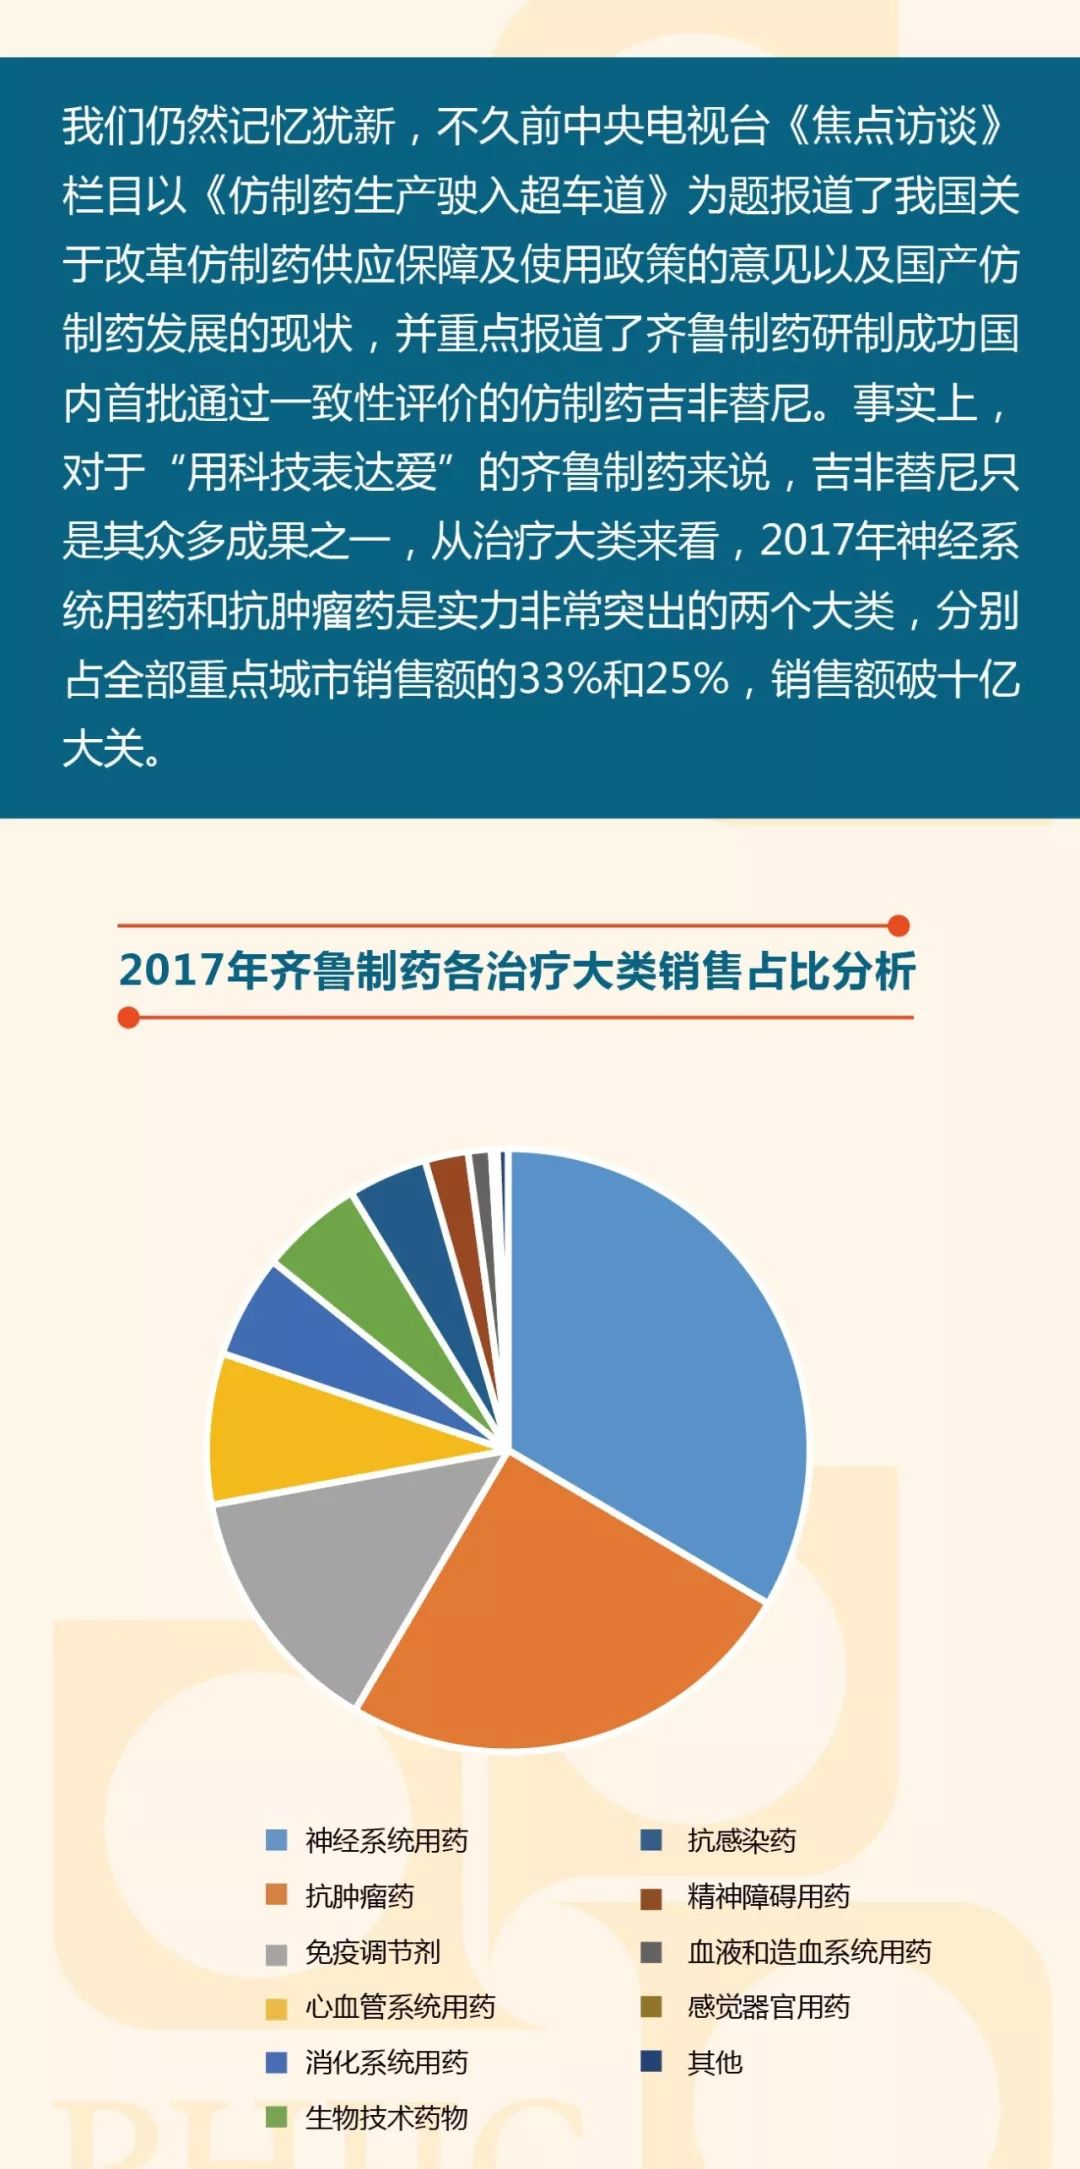 【数图说】2017年齐鲁制药国内销售市场概况